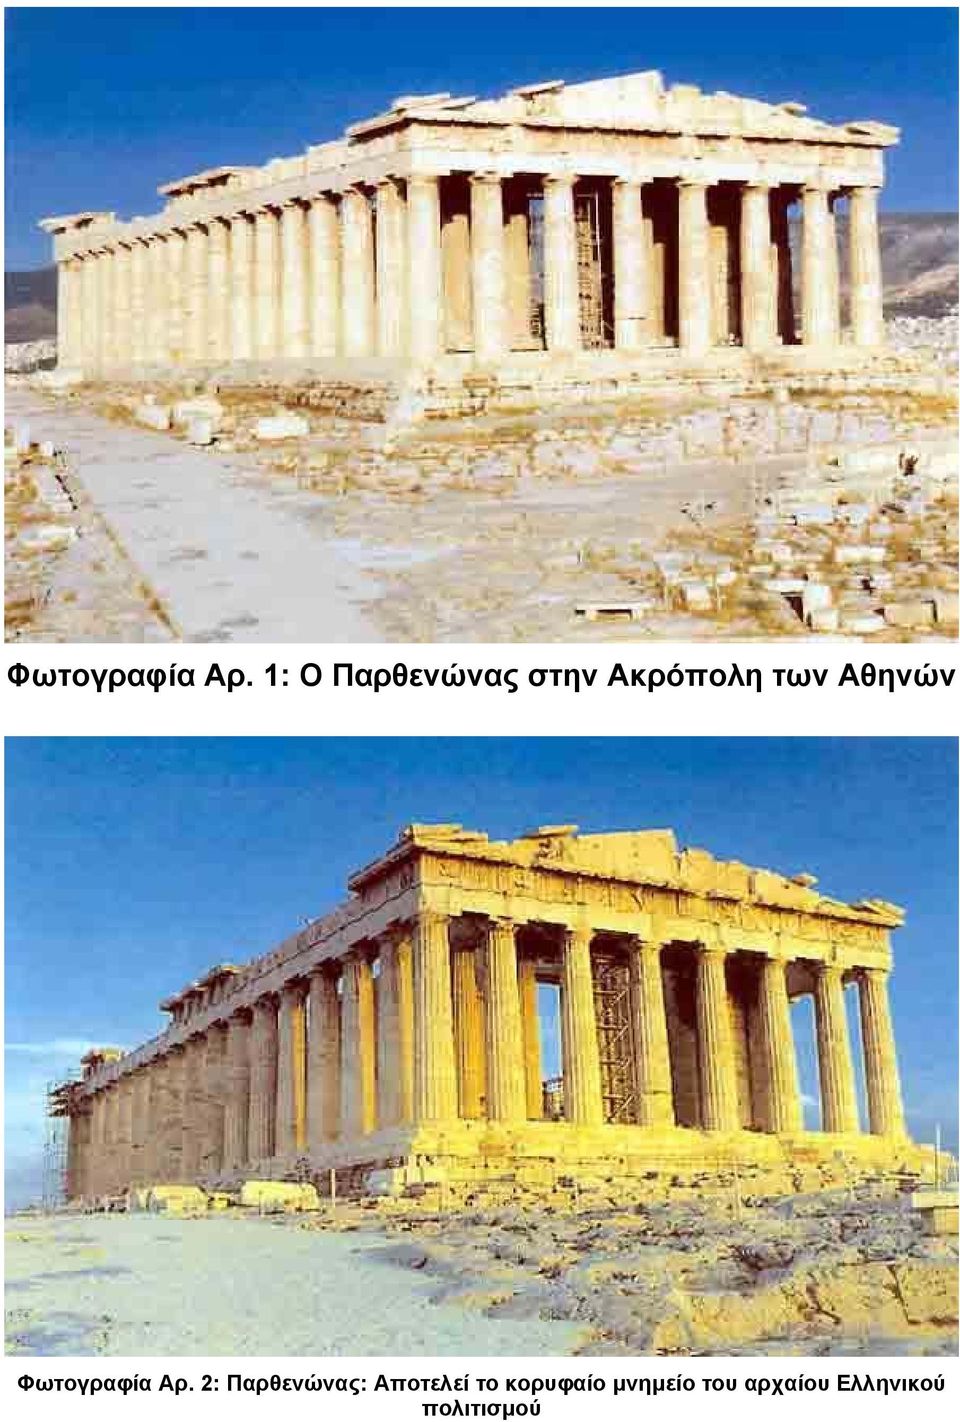 Αθηνών  2: Παρθενώνας: Αποτελεί το